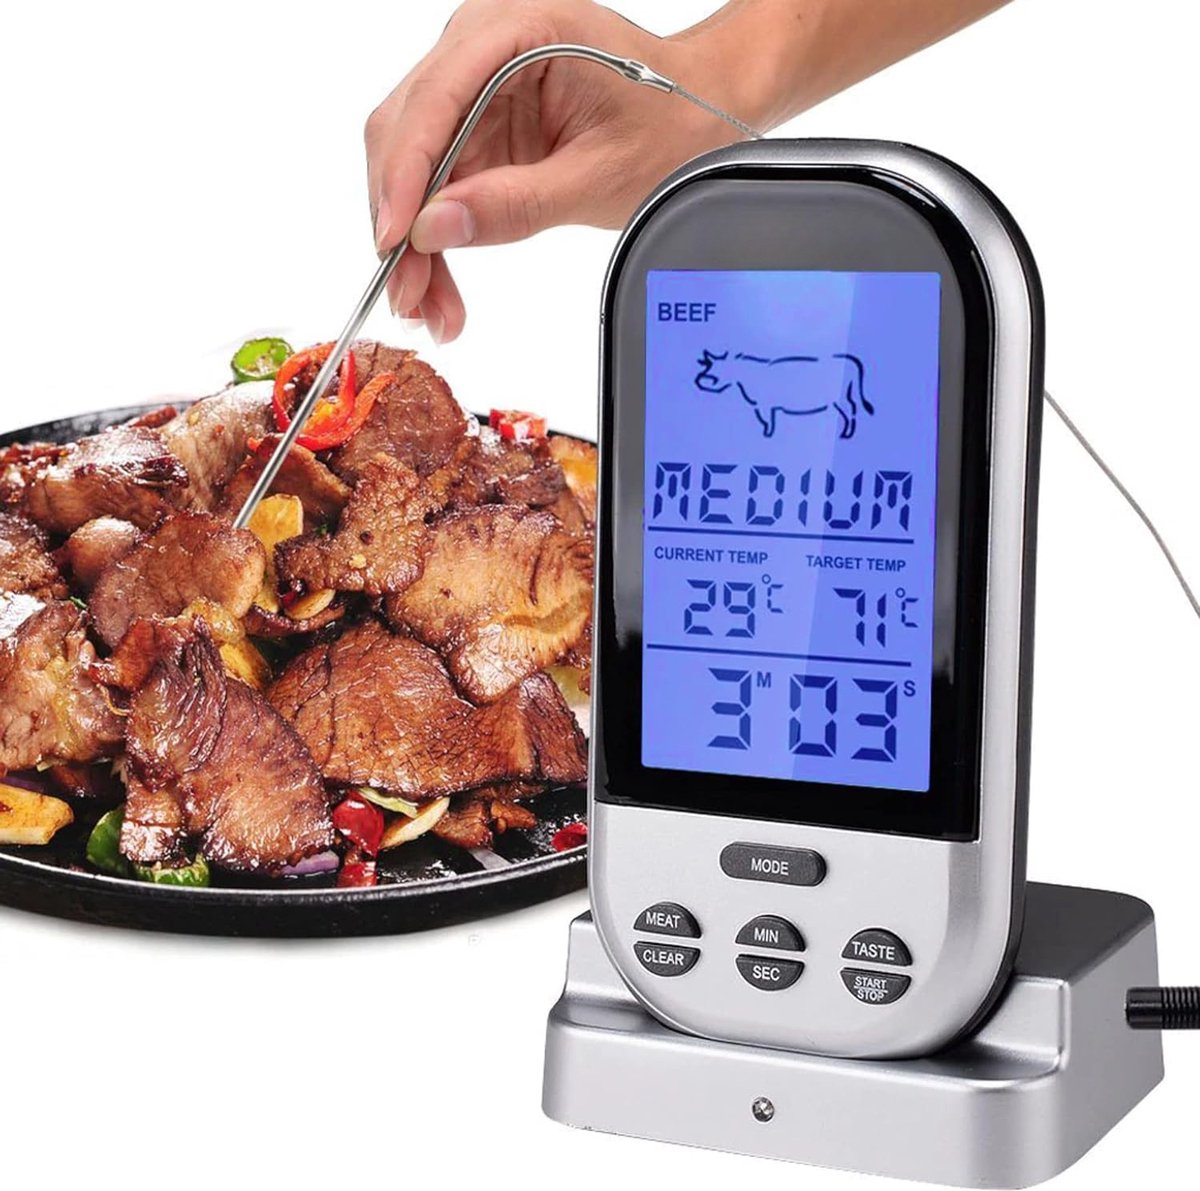 Draadloze Vleesthermometer met Ontvanger, LCD Display en Lange Meetsonde - Thermometer Geschikt voor BBQ , Oven , Vlees , Vis - BBQ Thermometer - Phreeze